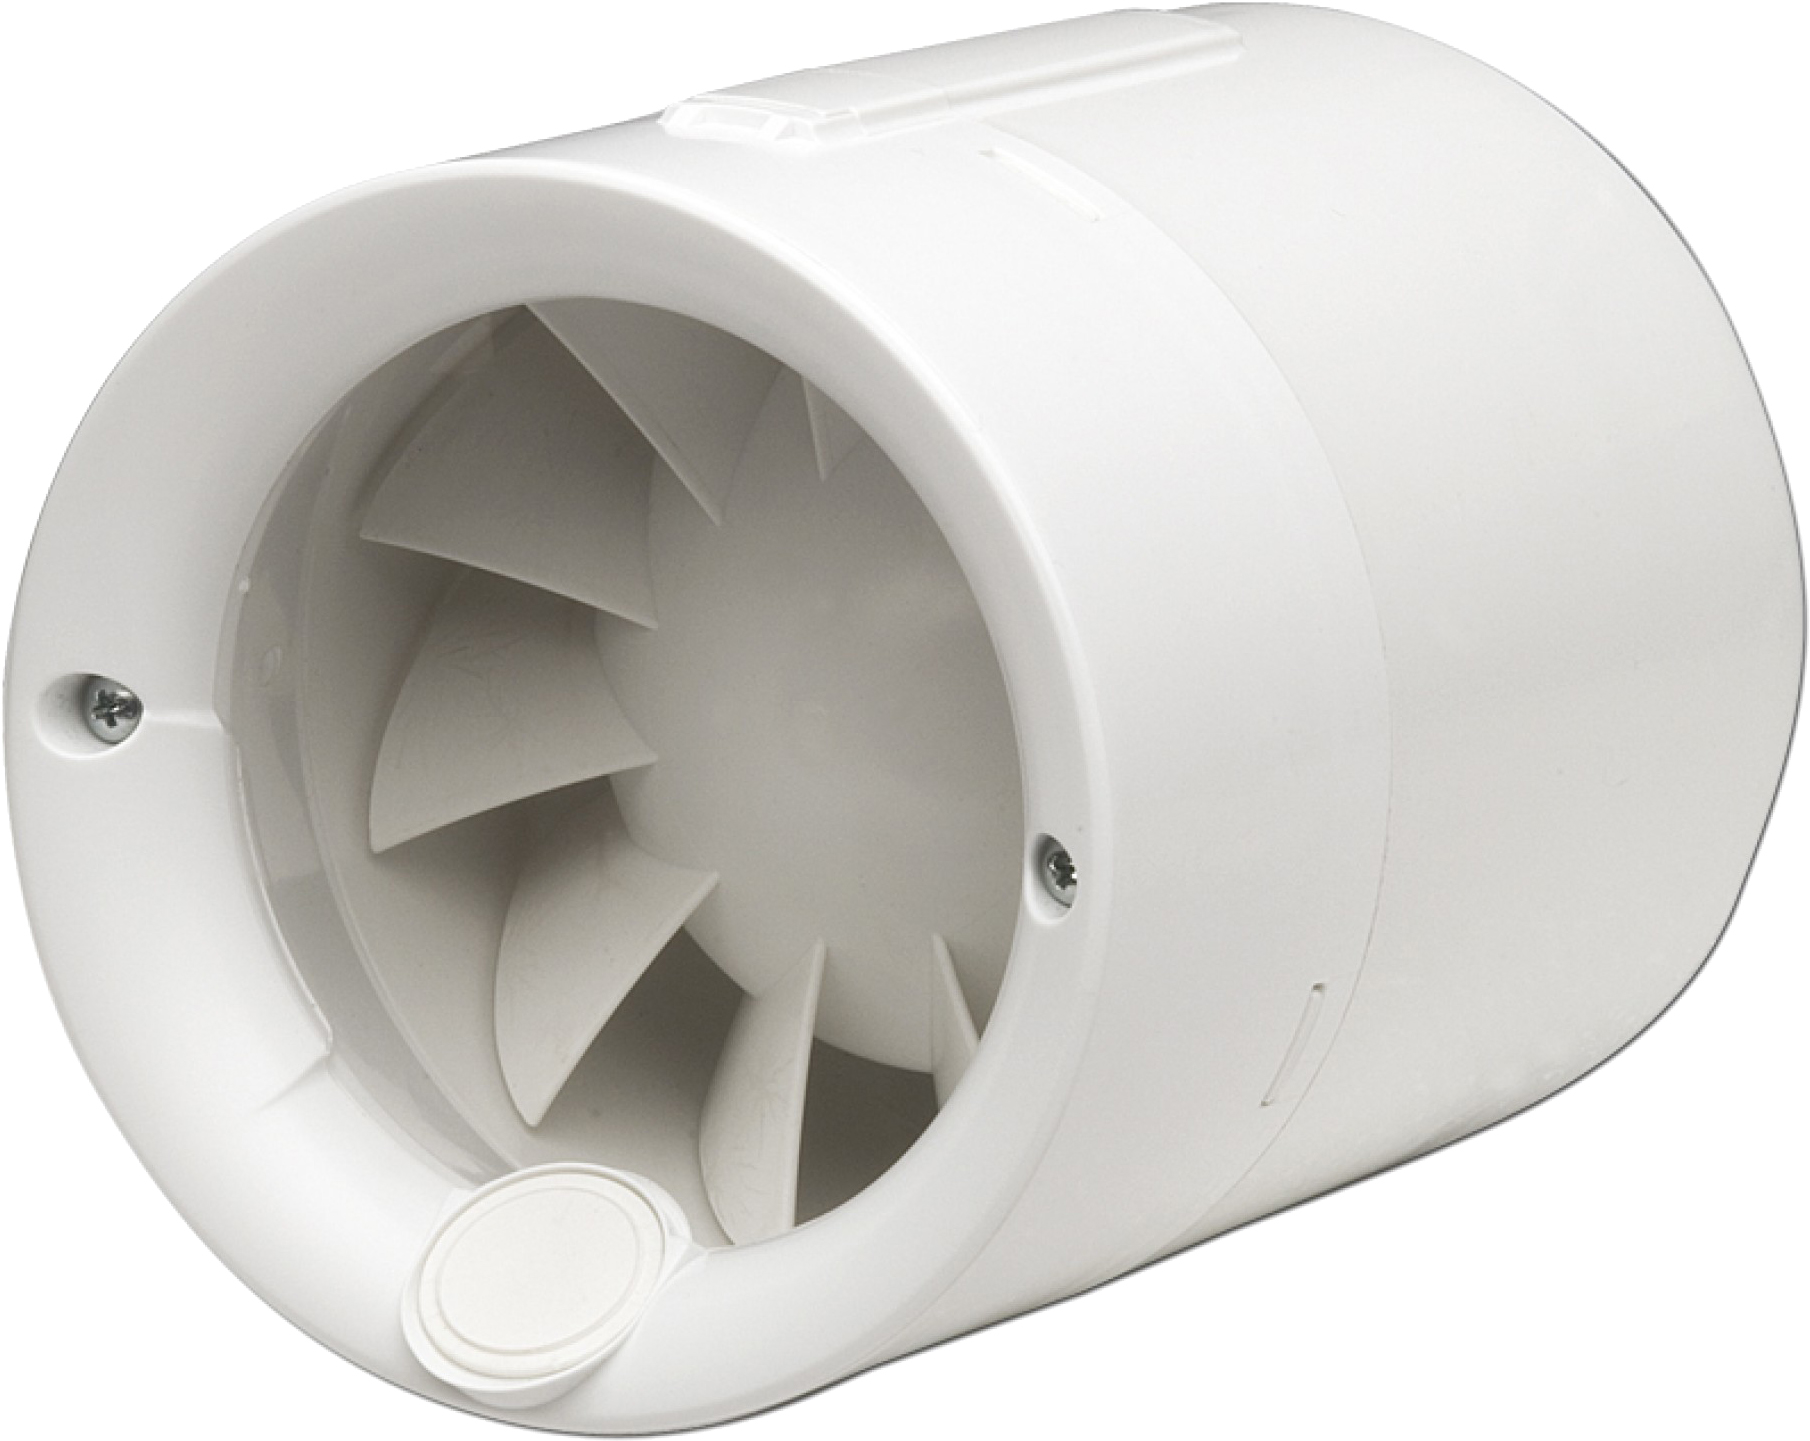 Характеристики испанский канальный вентилятор Soler&Palau Silentub-200